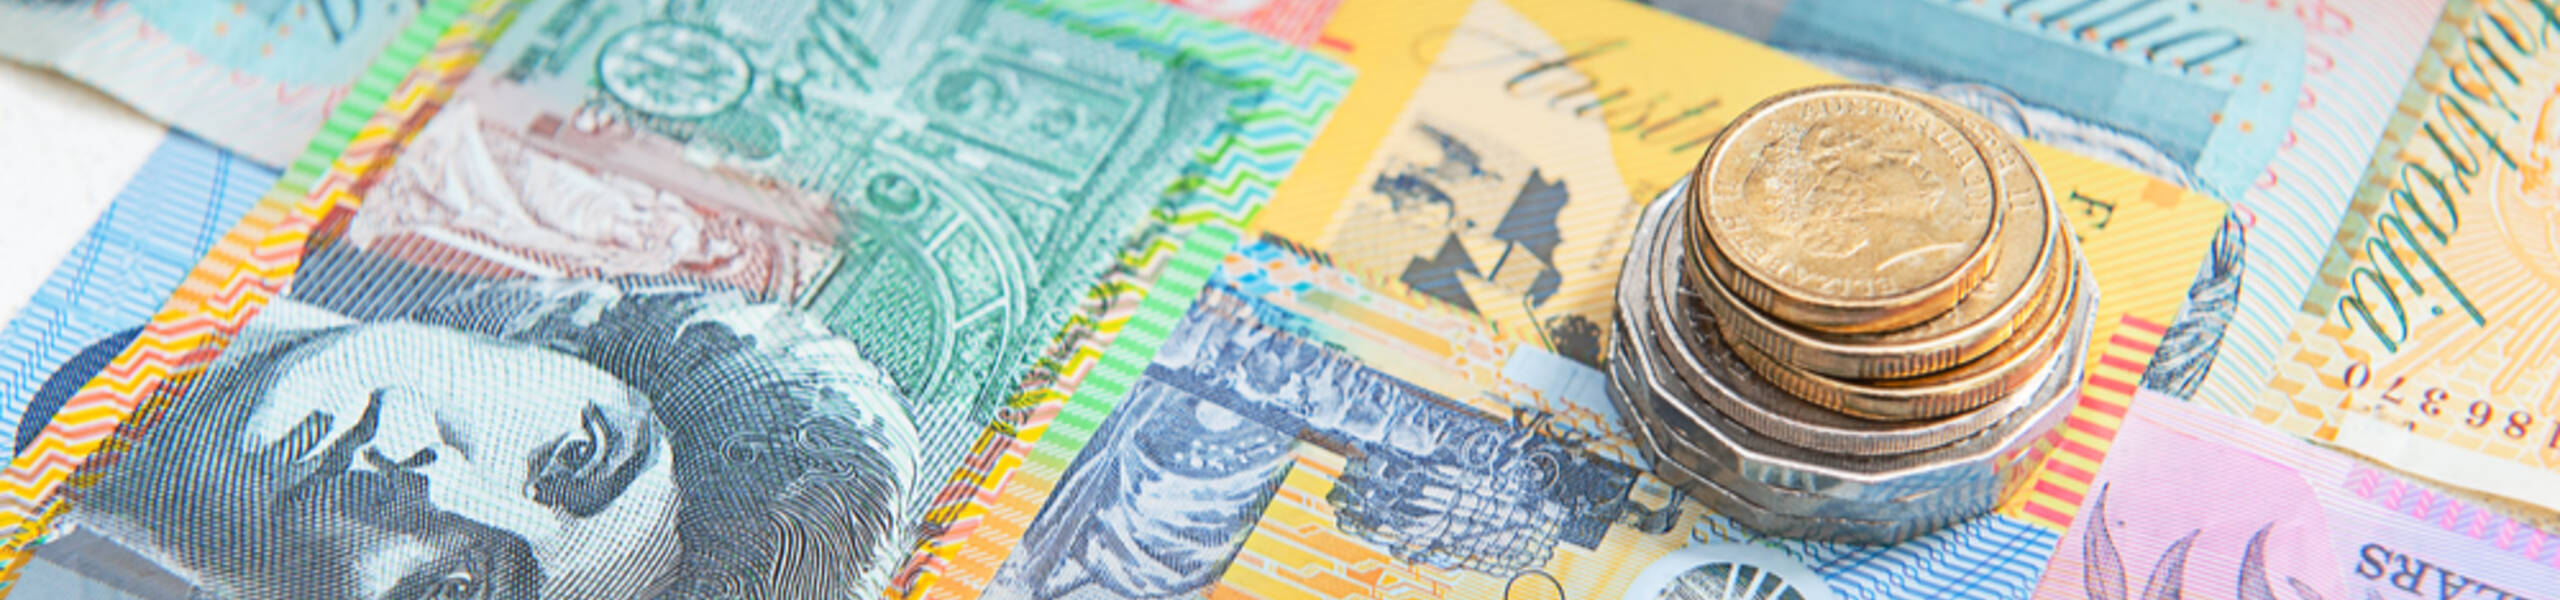 RBA Rate Statement และ Cash Rate ของธนาคารกลางออสเตรเลียที่มีการคงอัตราดอกเบี้ย